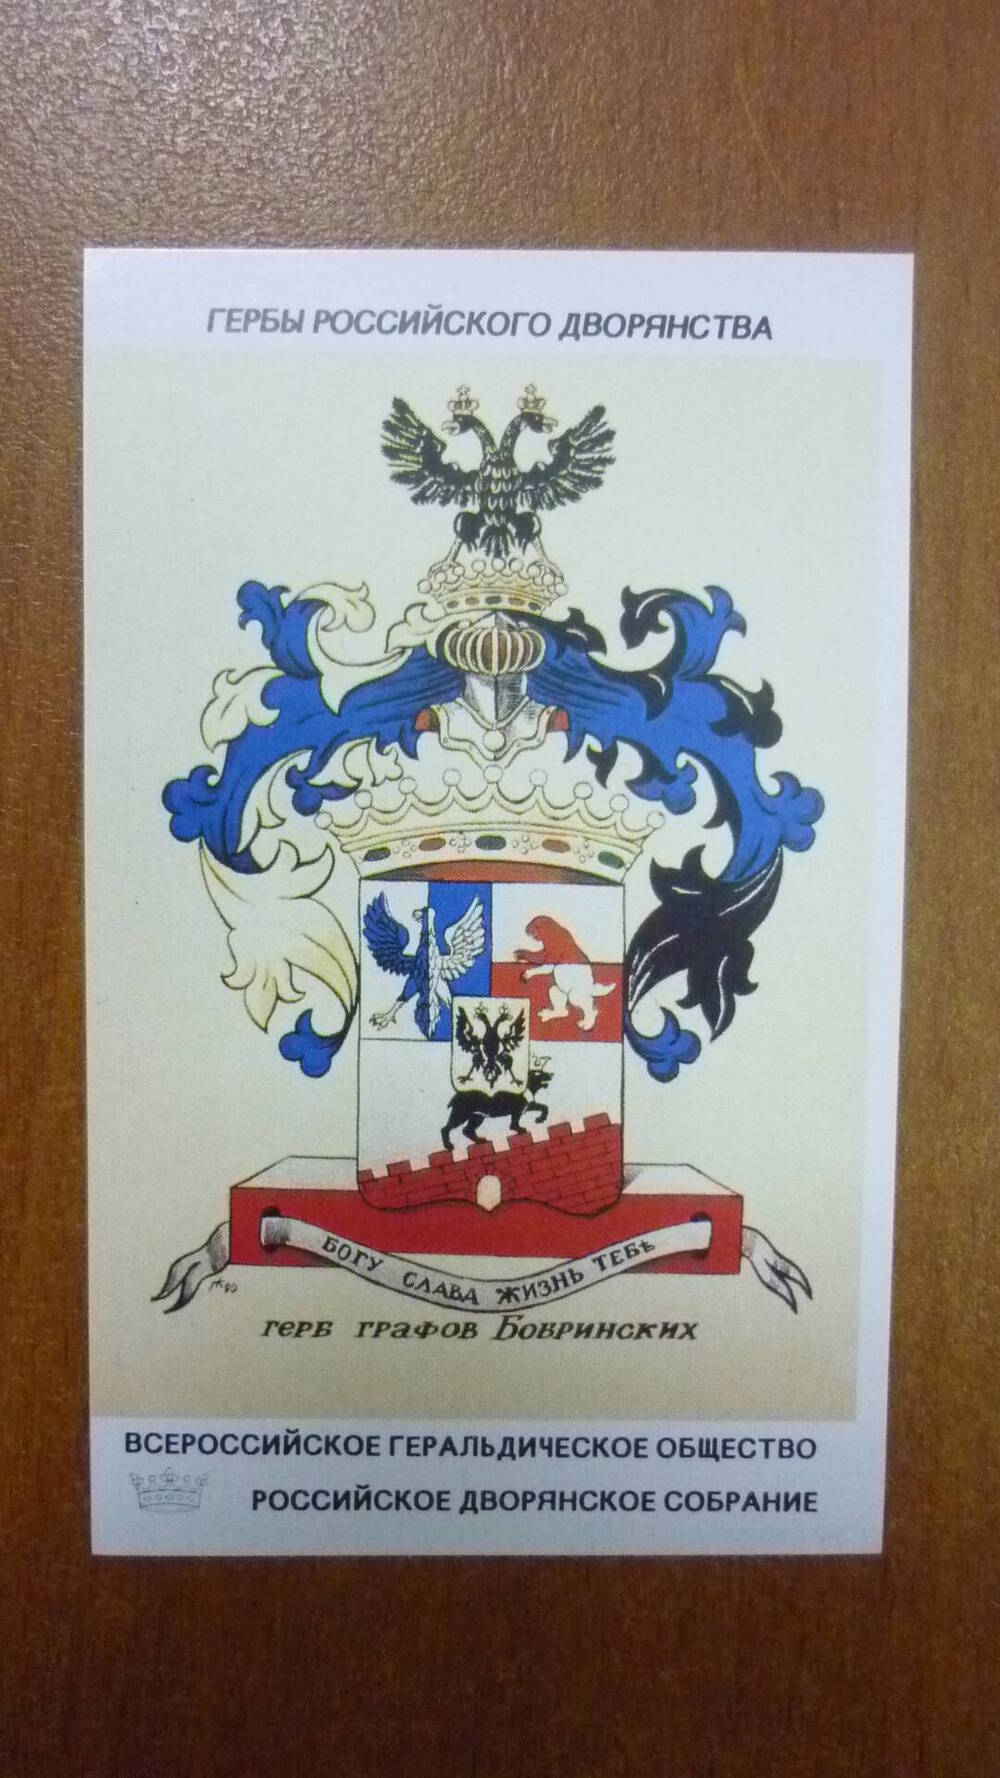 Календарь Герб графов Бобринских